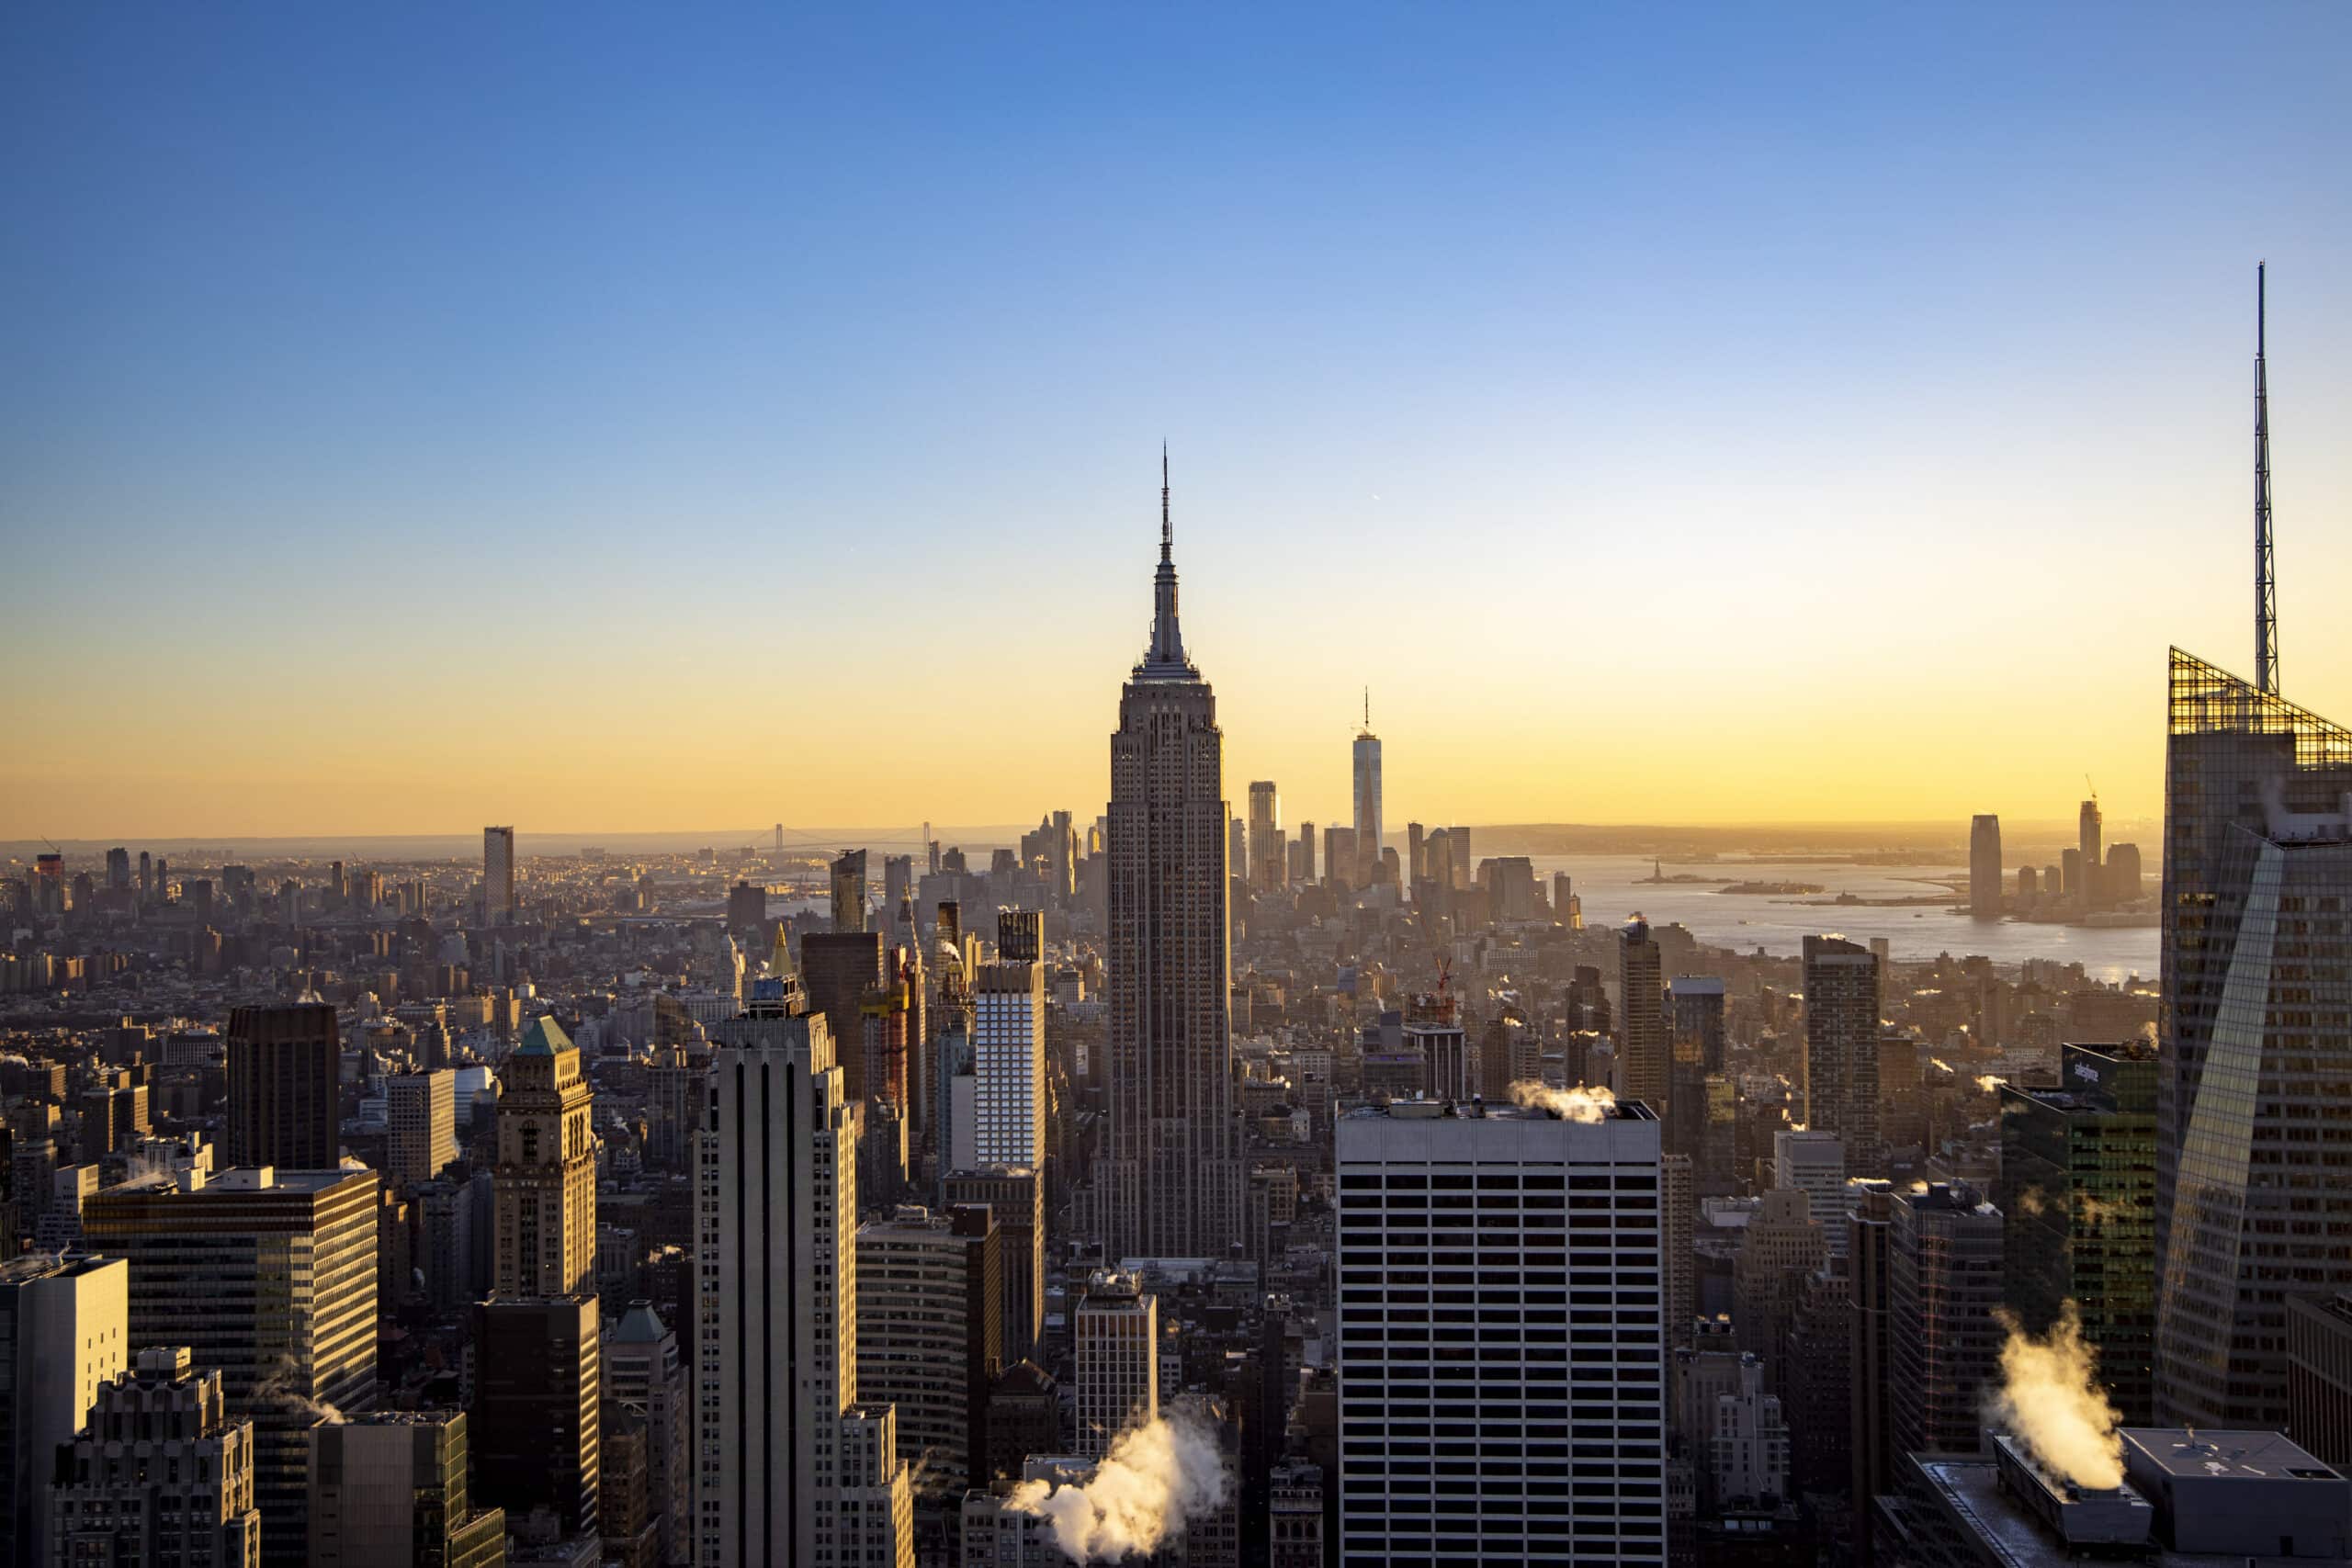 Ein malerischer Blick bei Sonnenaufgang über der Skyline von New York City mit dem Empire State Building im Mittelpunkt, wobei helles Sonnenlicht einen warmen Glanz über die Stadtlandschaft wirft. © Fotografie Tomas Rodriguez